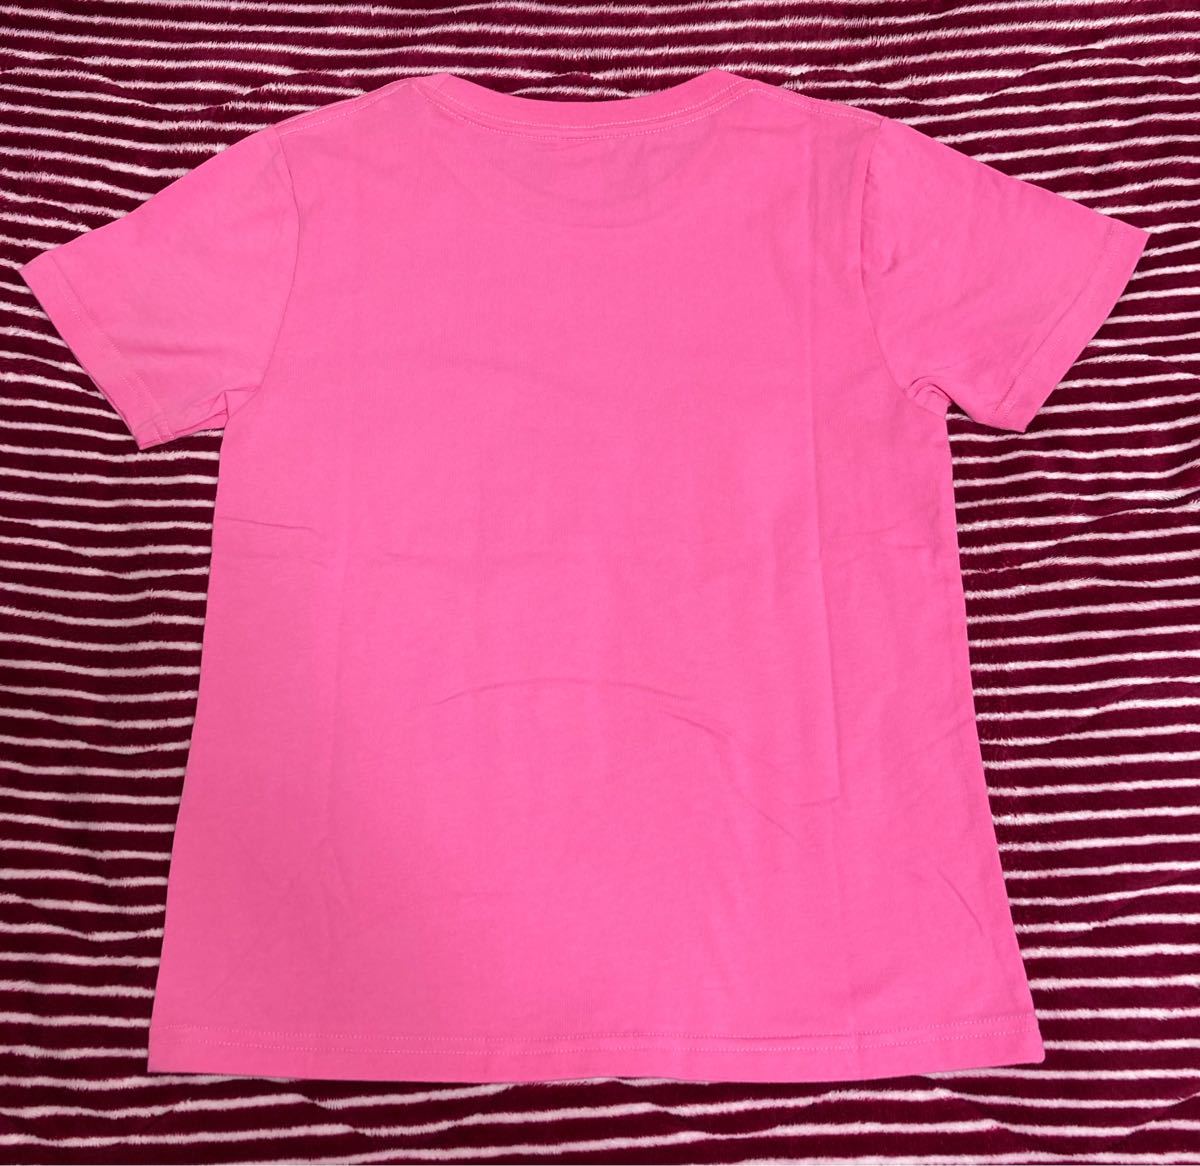 東京オリンピック　公式Tシャツ　キッズサイズ　2枚セット